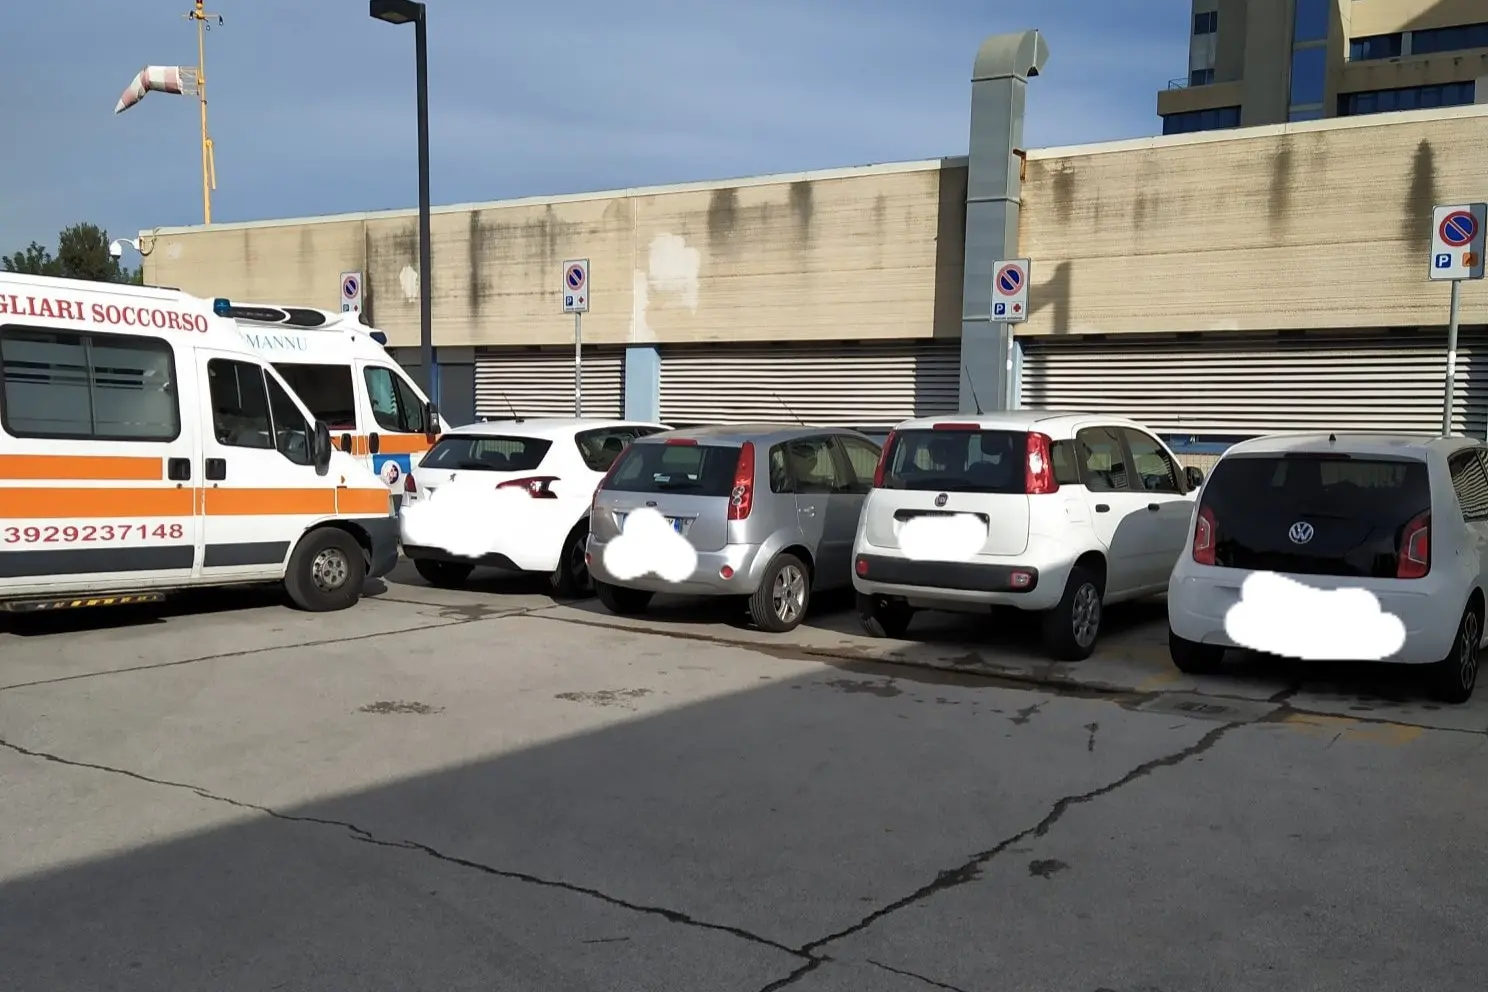 Interrogazione sulla sosta selvaggia negli ospedali, non solo di Cagliari (L'Unione Sarda)